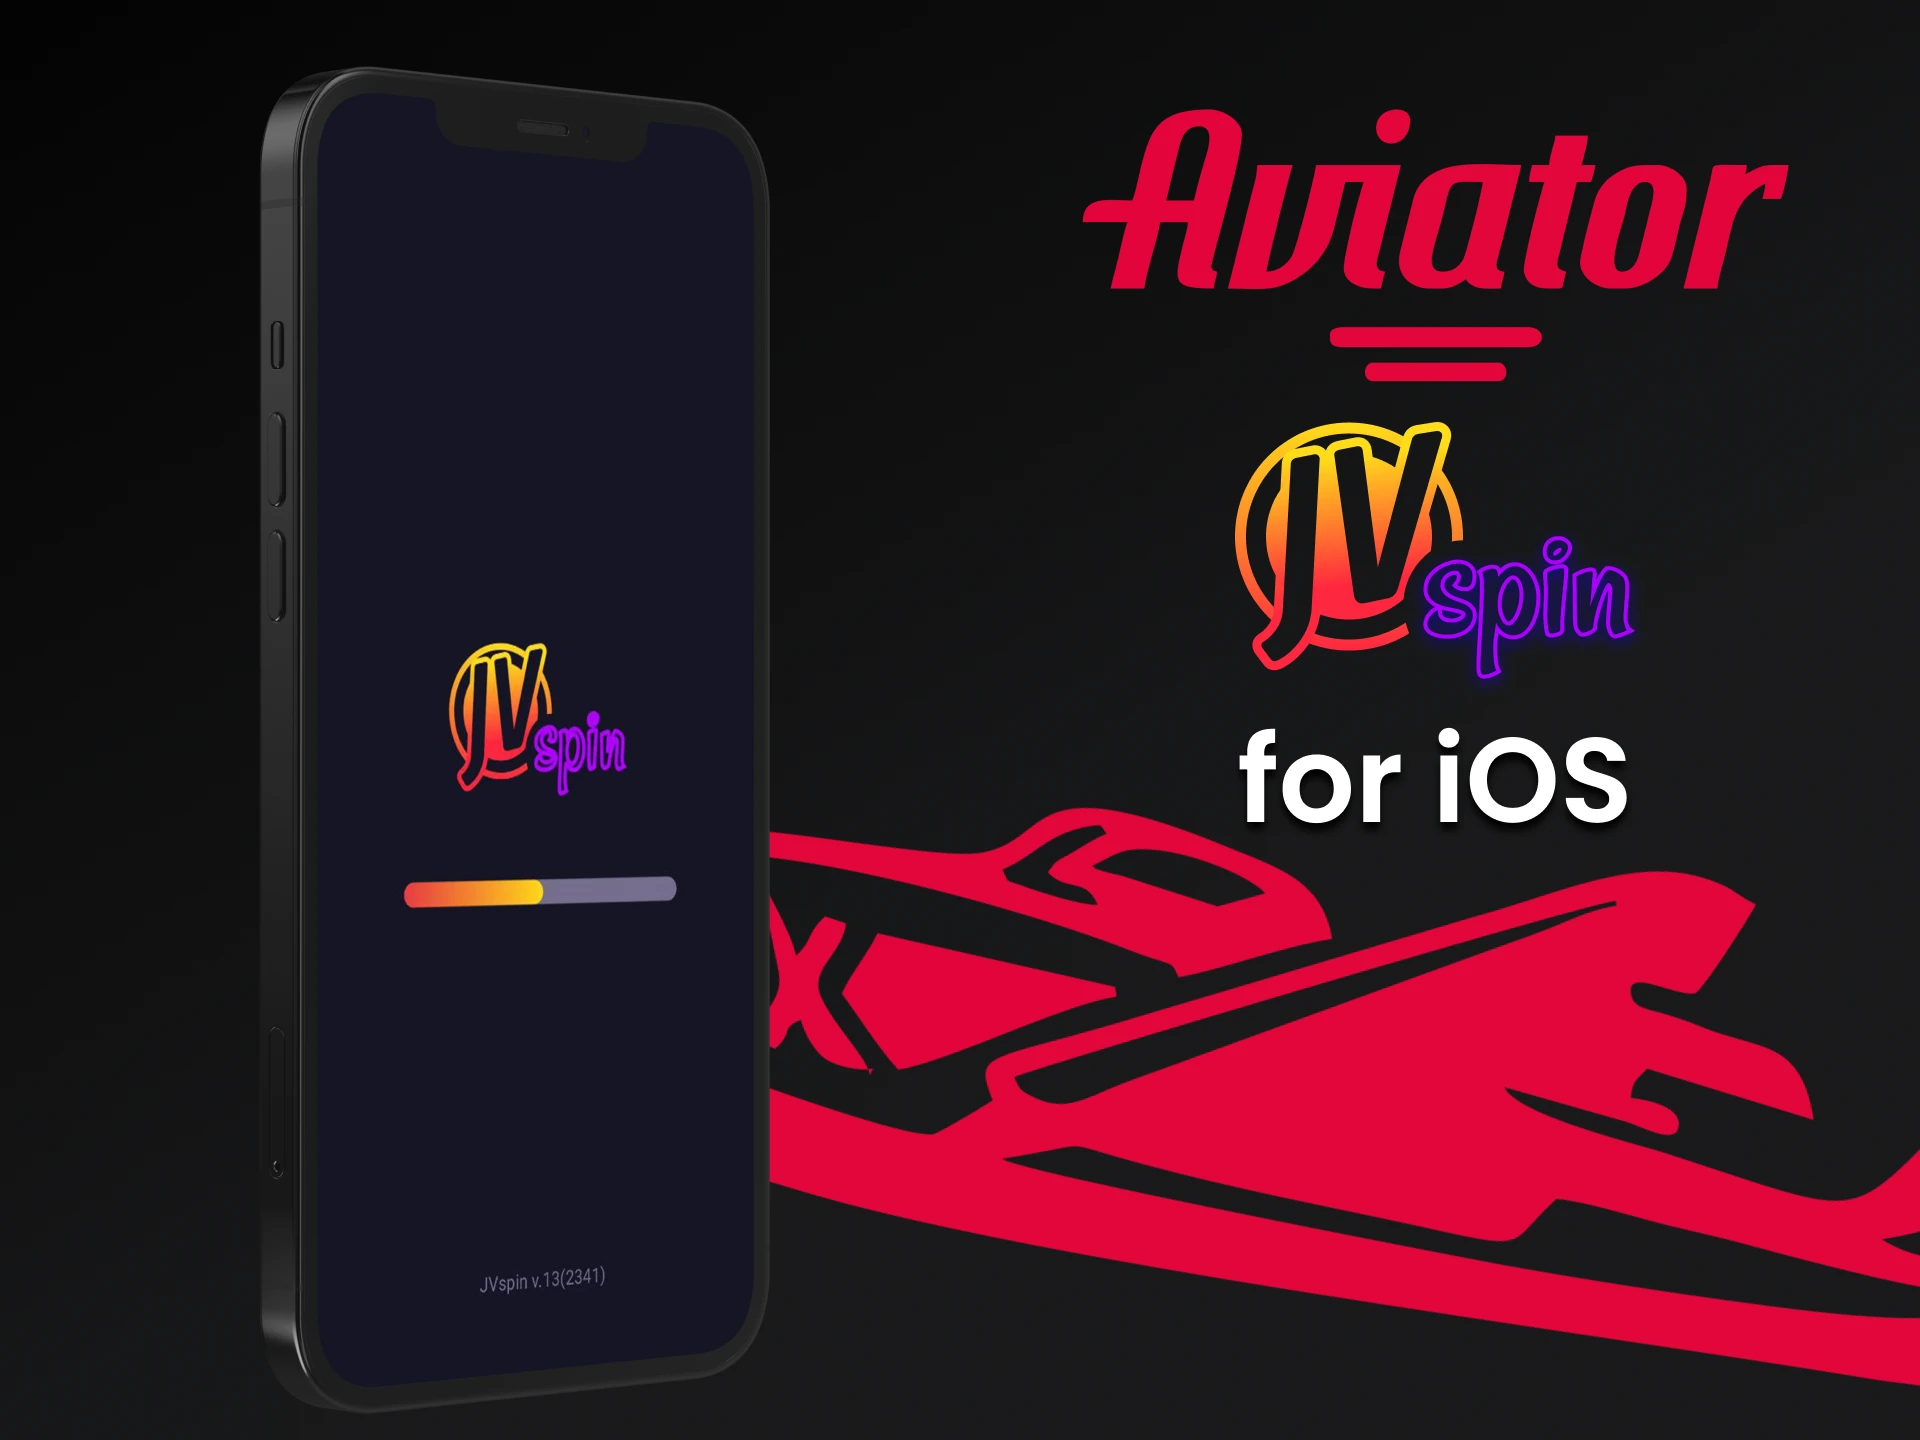 Play Aviator on the JV Slot iOS app.